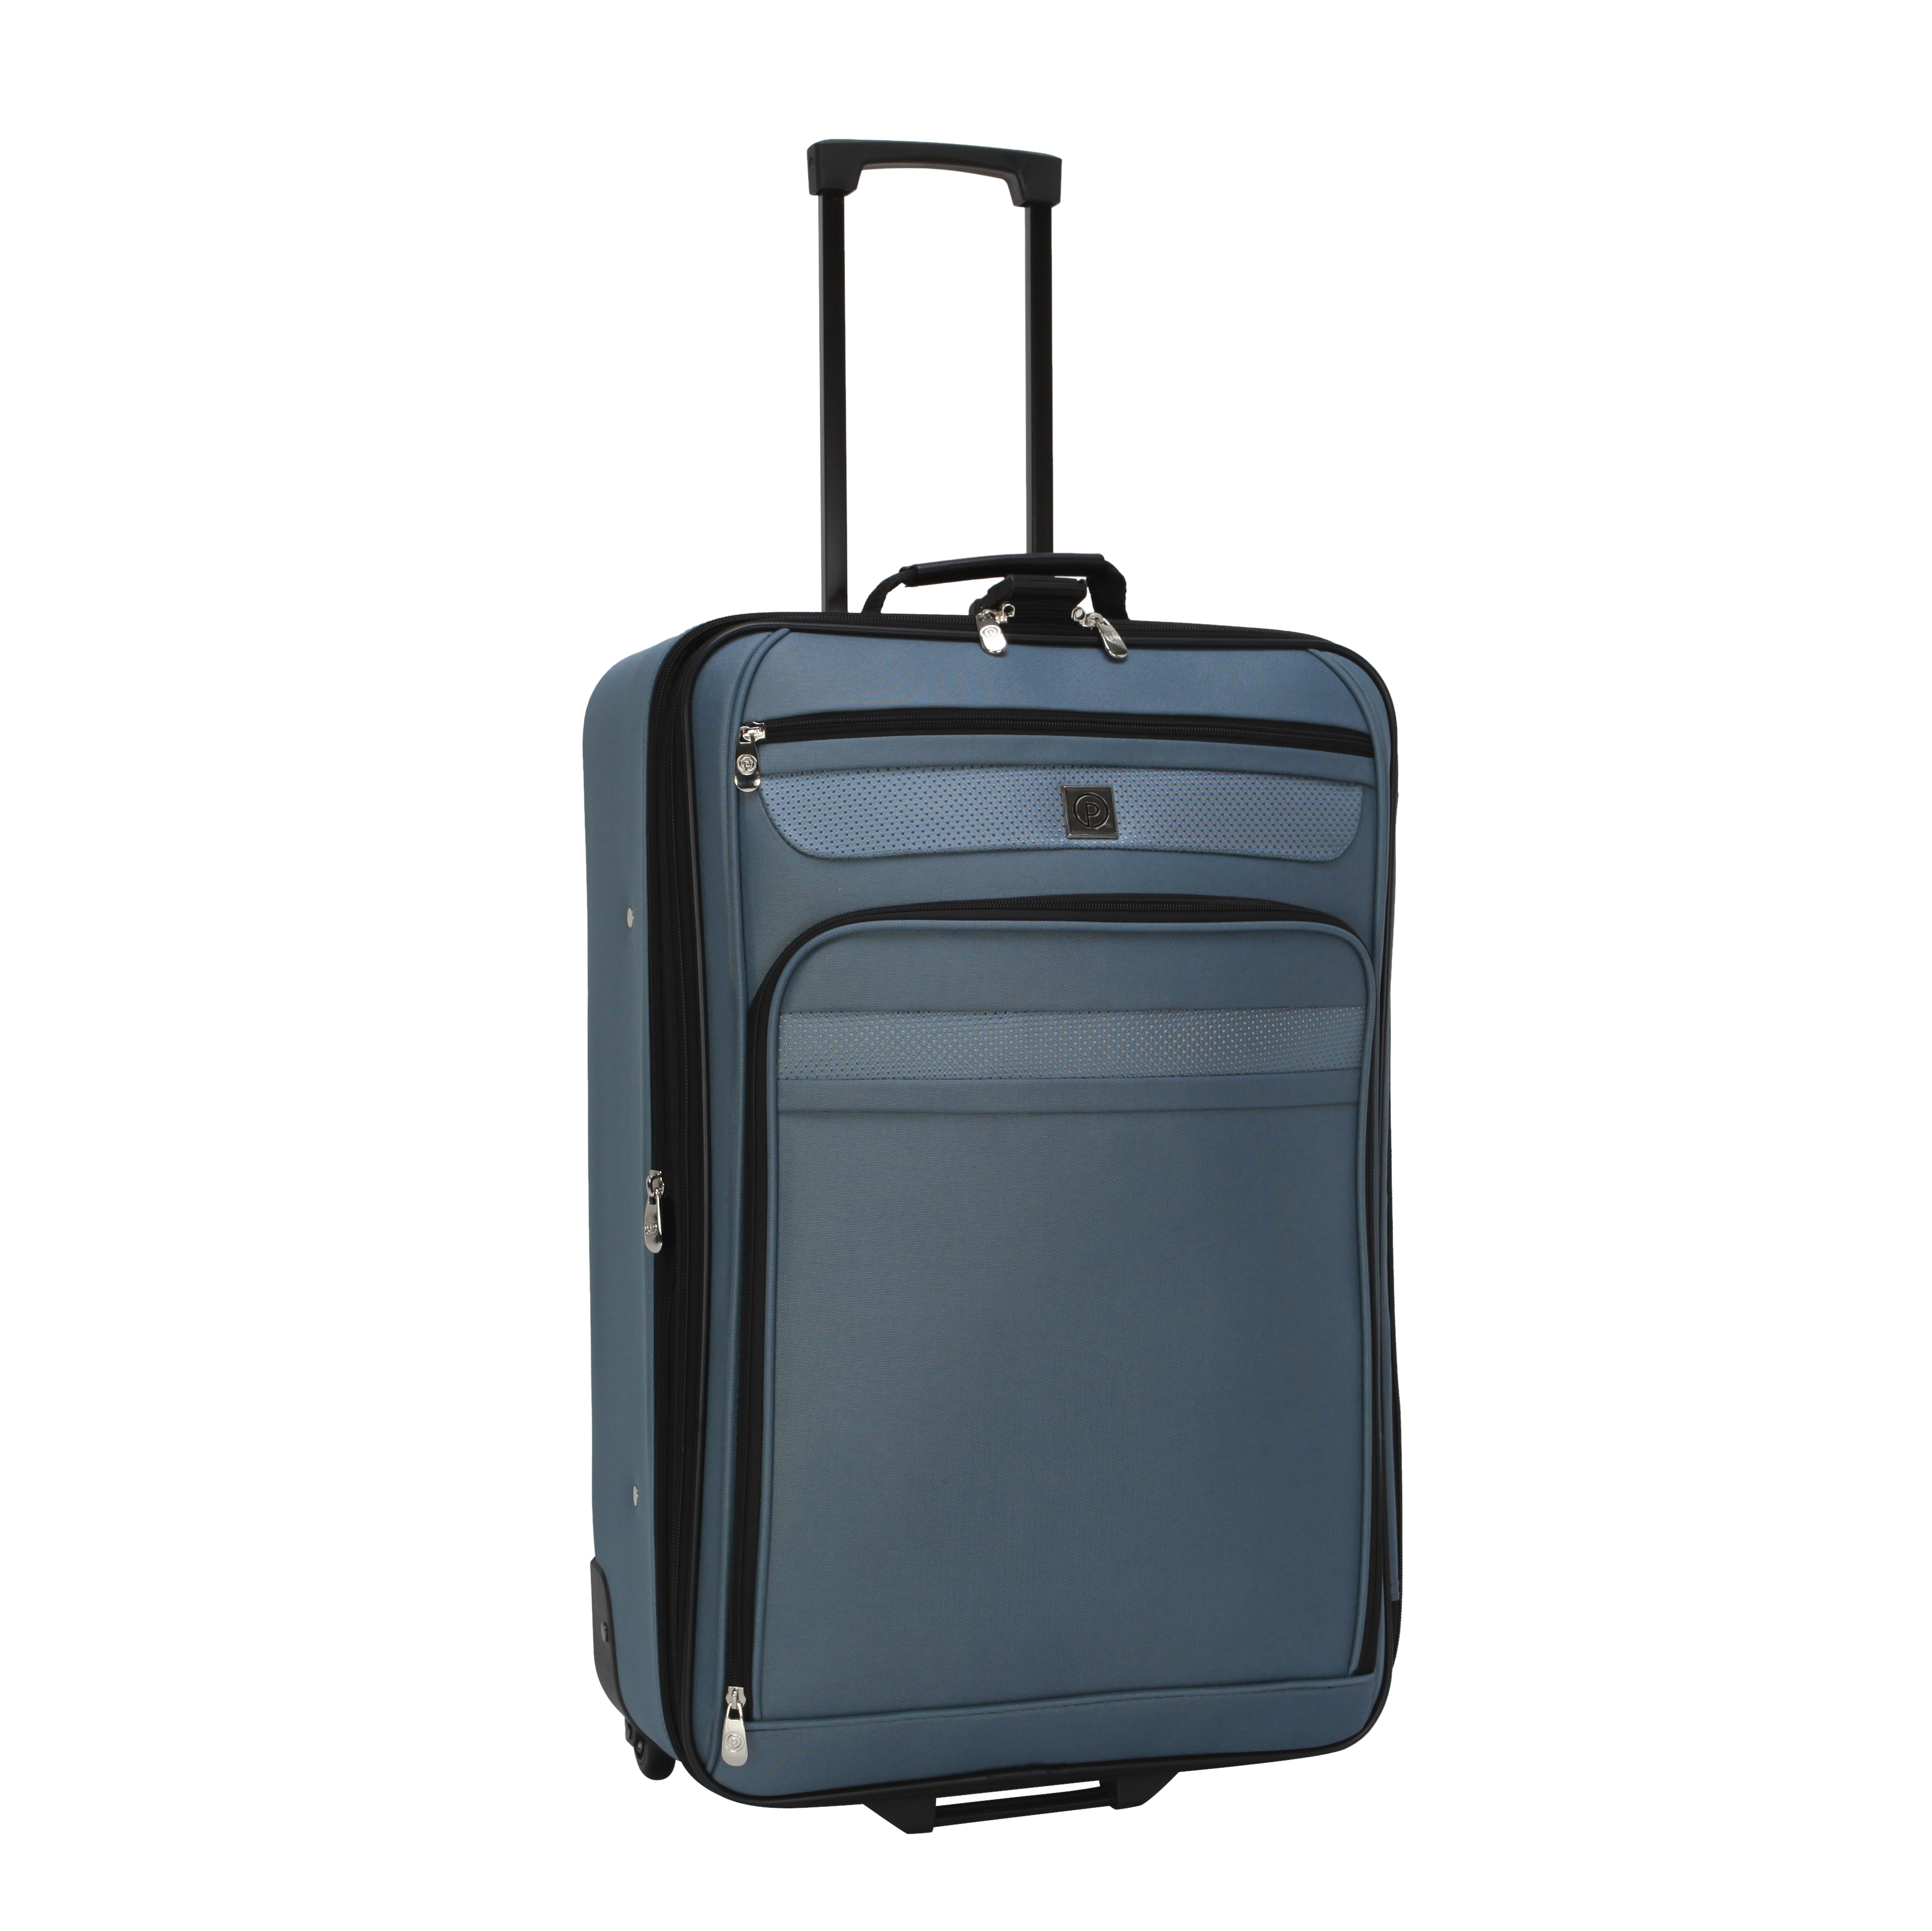 Protege 3-Piece Softside Luggage Value Travel Set - Blue - image 3 of 11